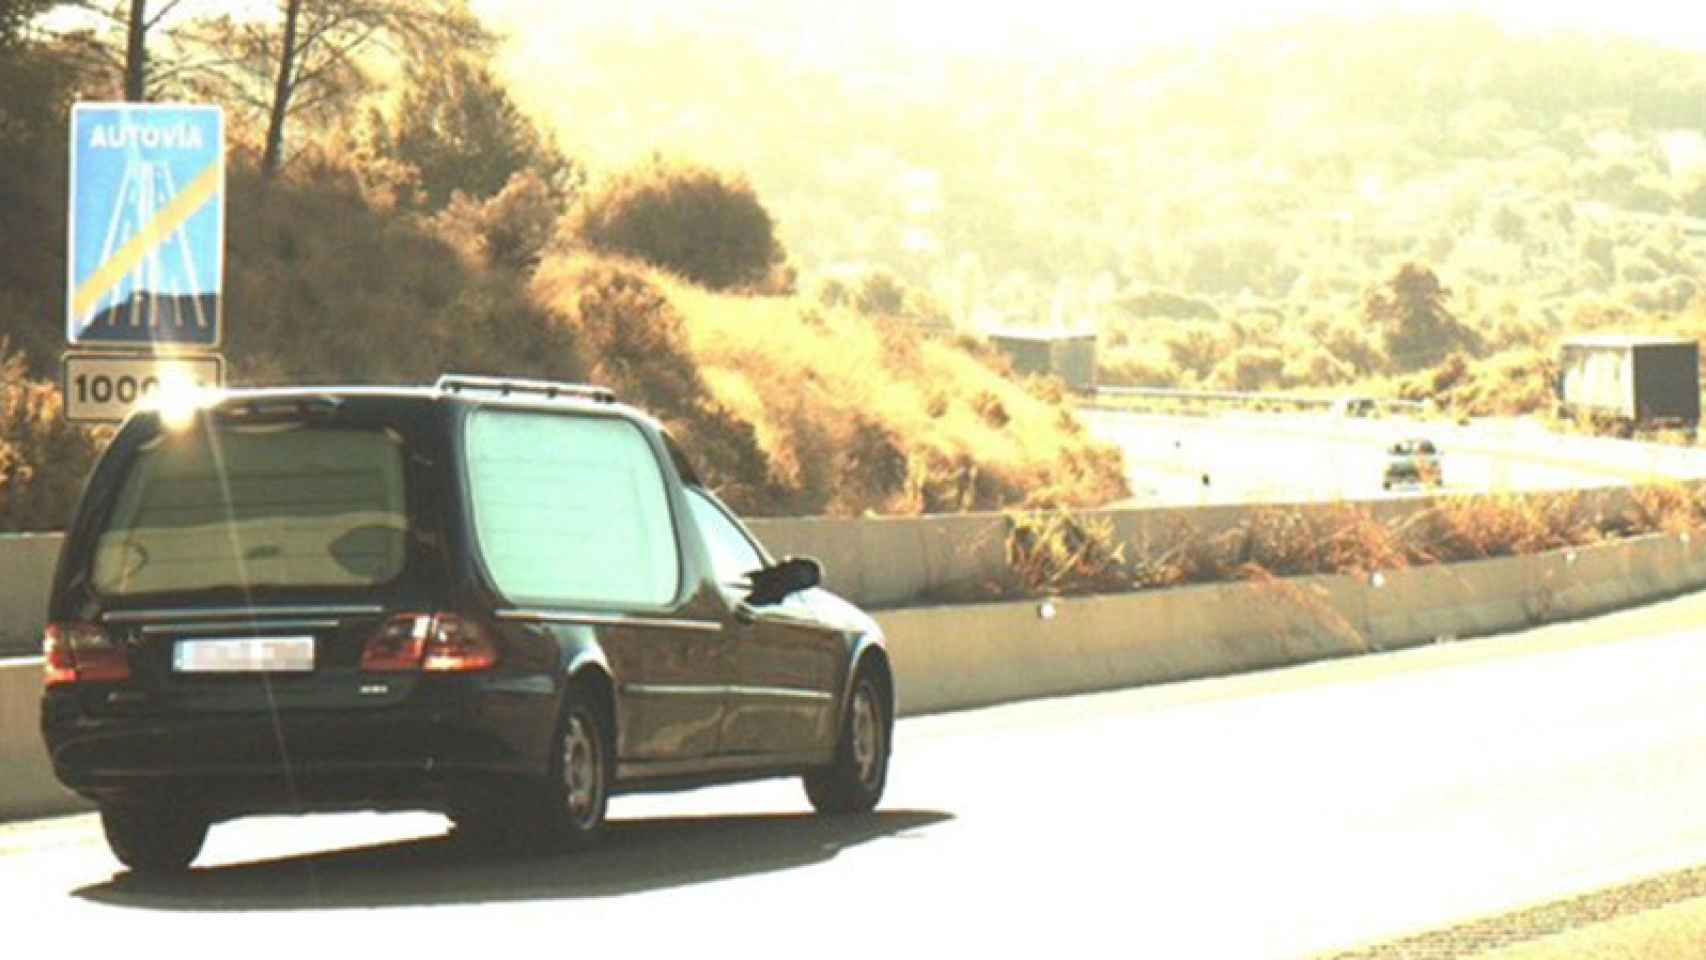 Imagen del coche funerario captada por los Mossos d'Esquadra a 136 km/h, cuyo conductor tenía los puntos del carné agotados. / CG